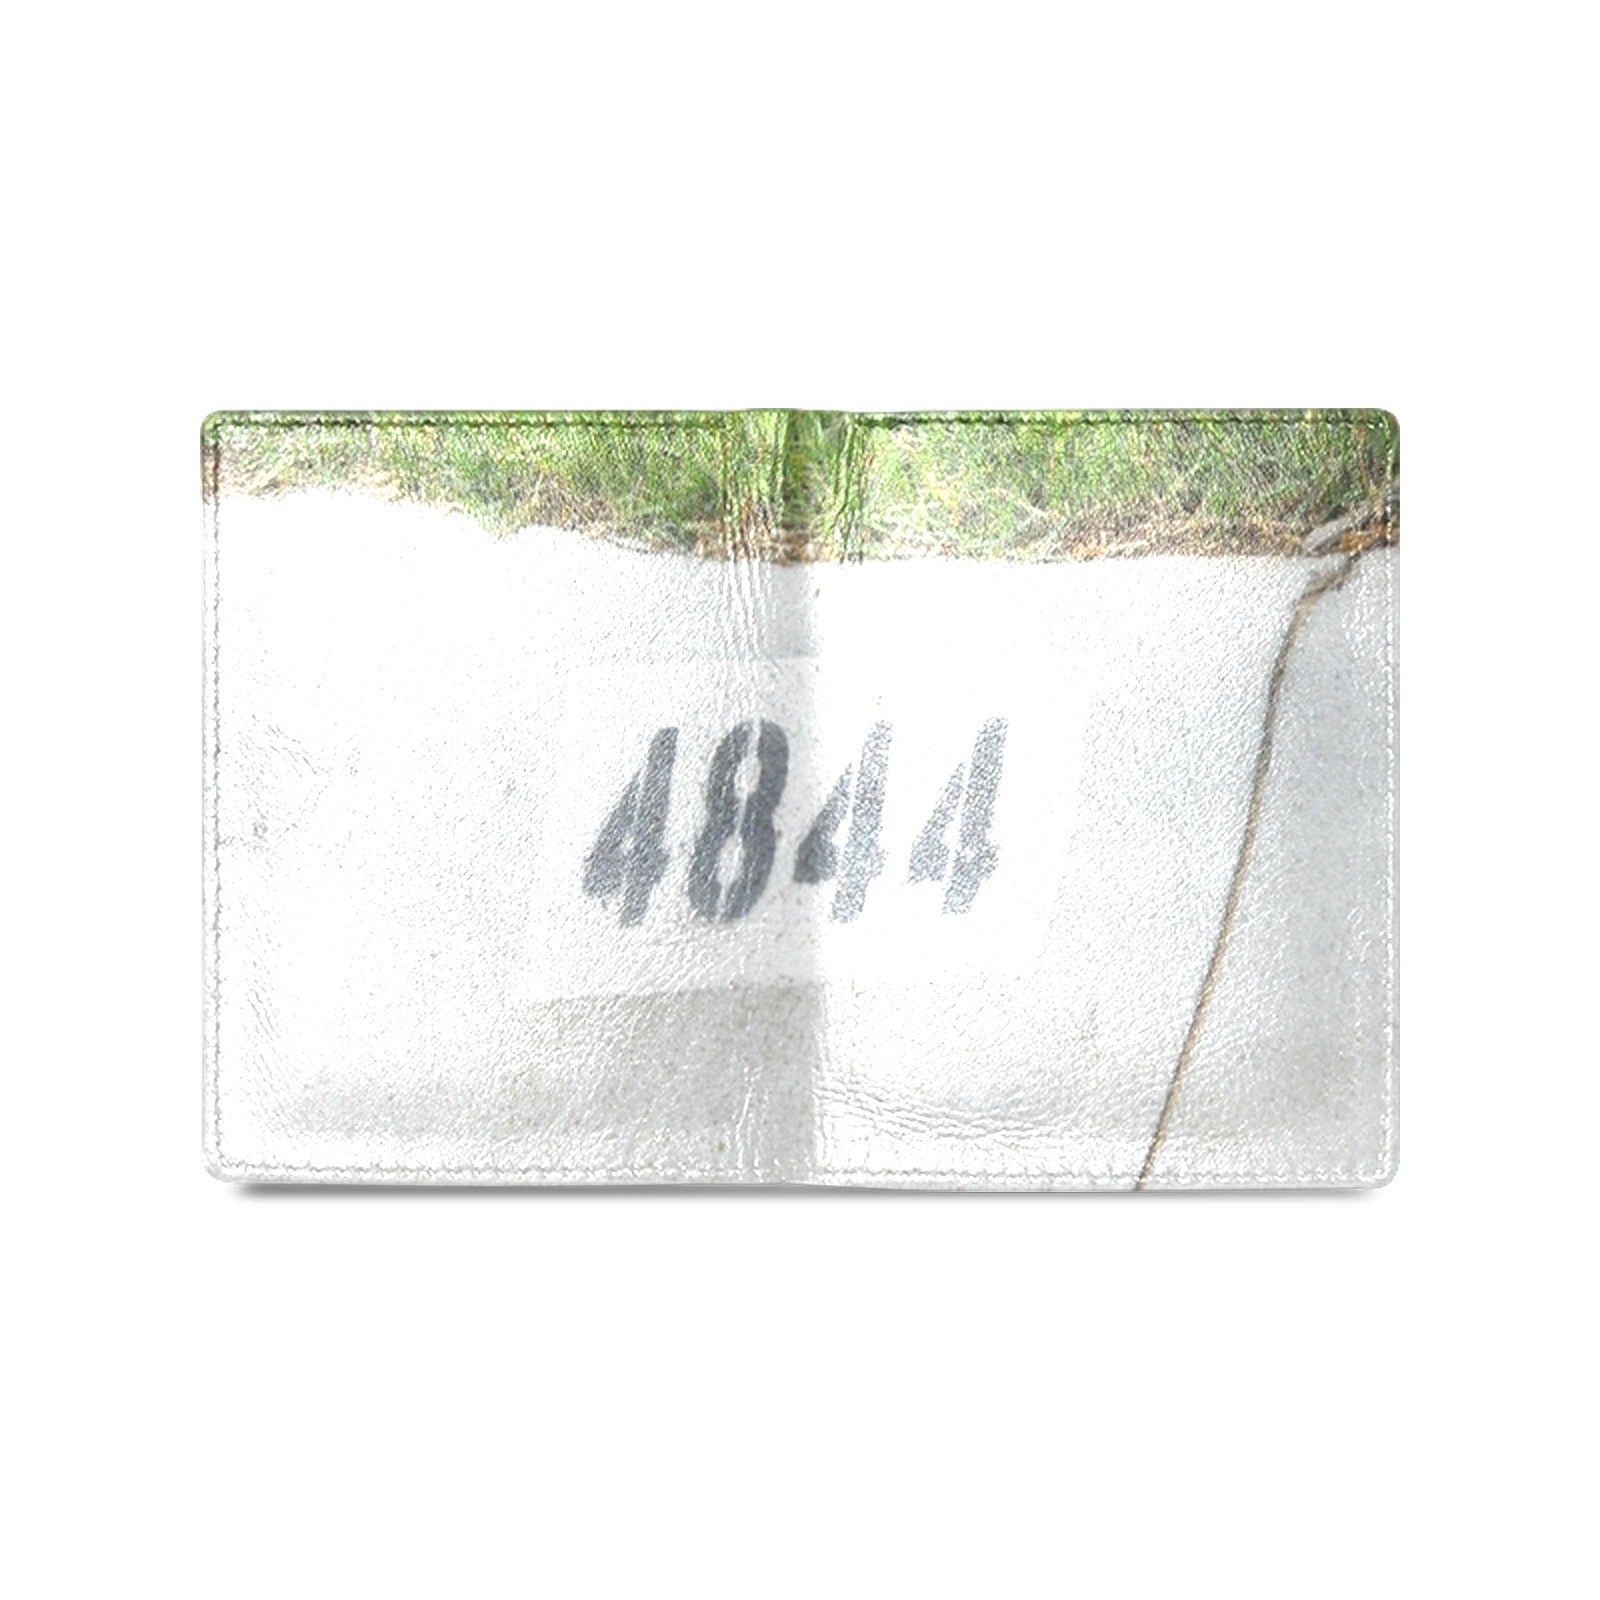 Street Number 4844 Men's Leather Wallet (Model 1612)